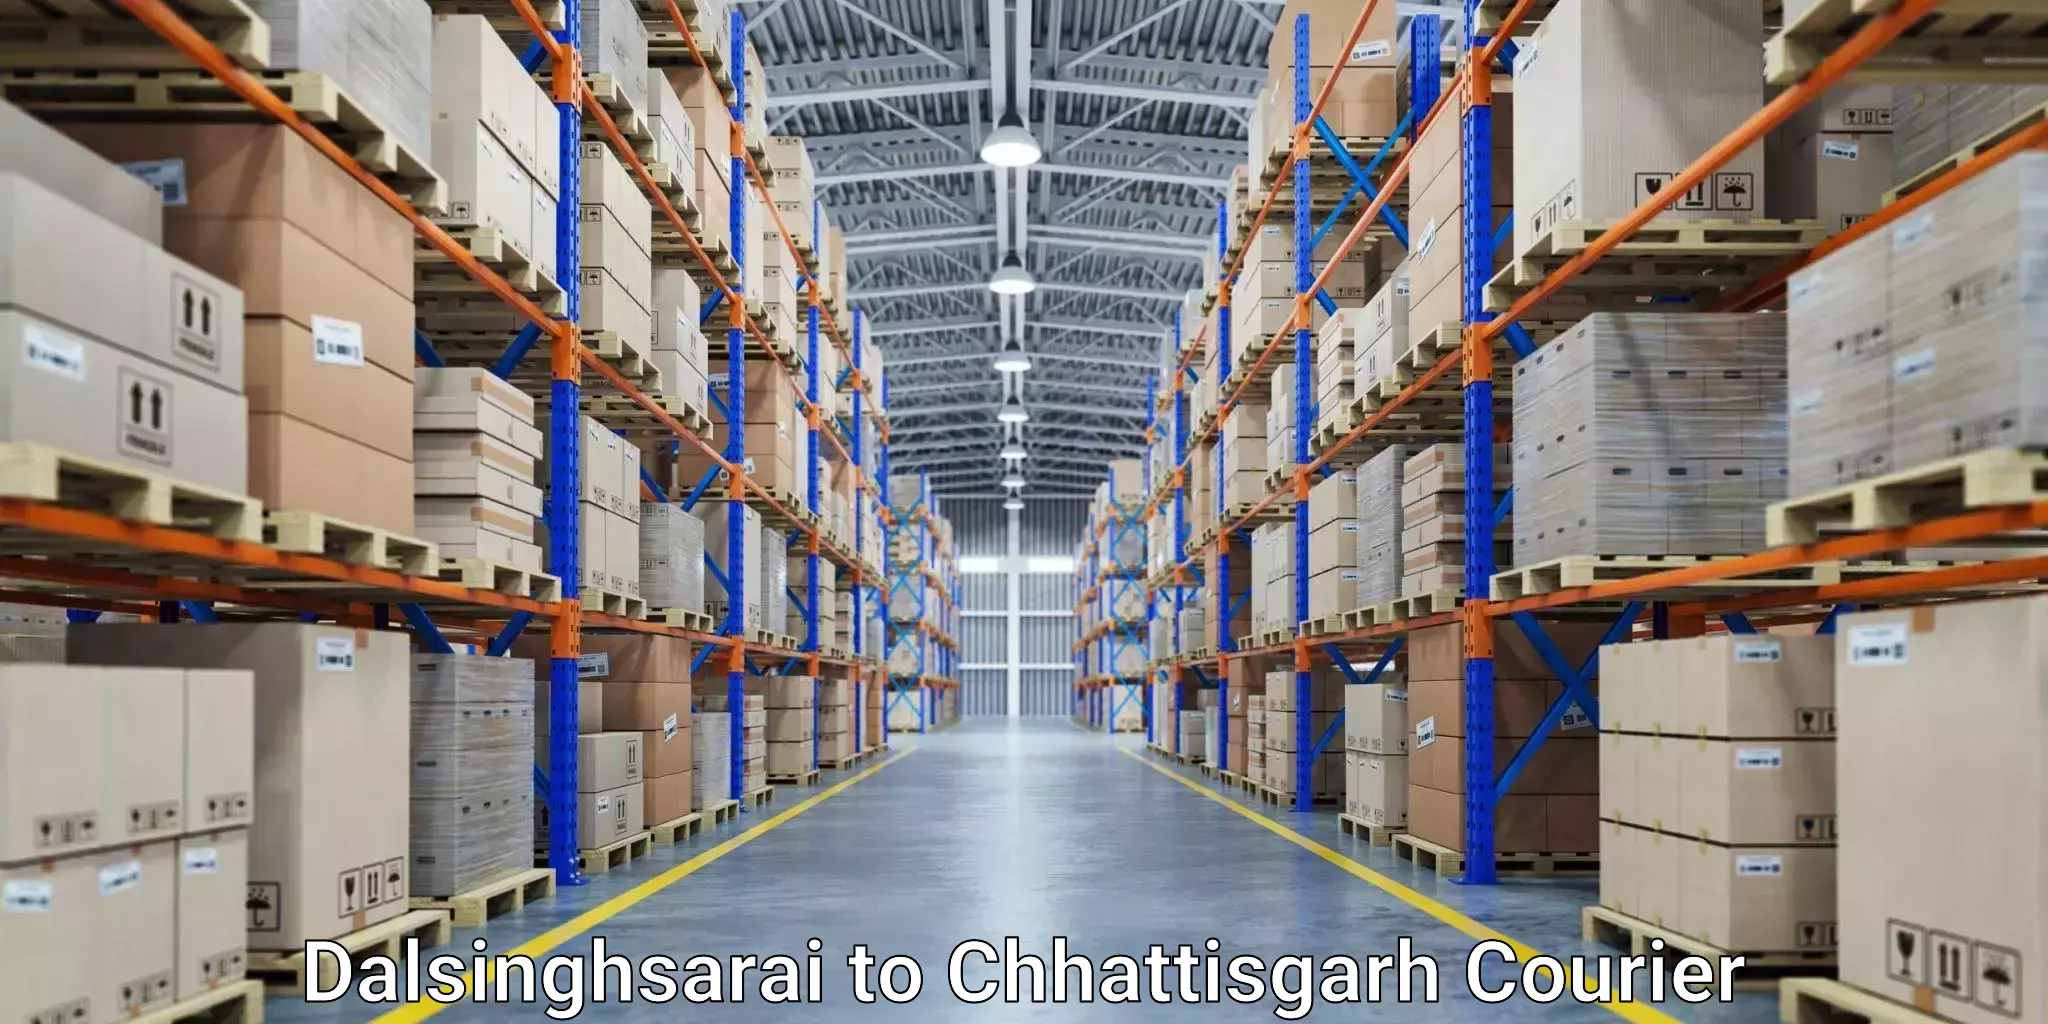 Advanced shipping technology Dalsinghsarai to Charama